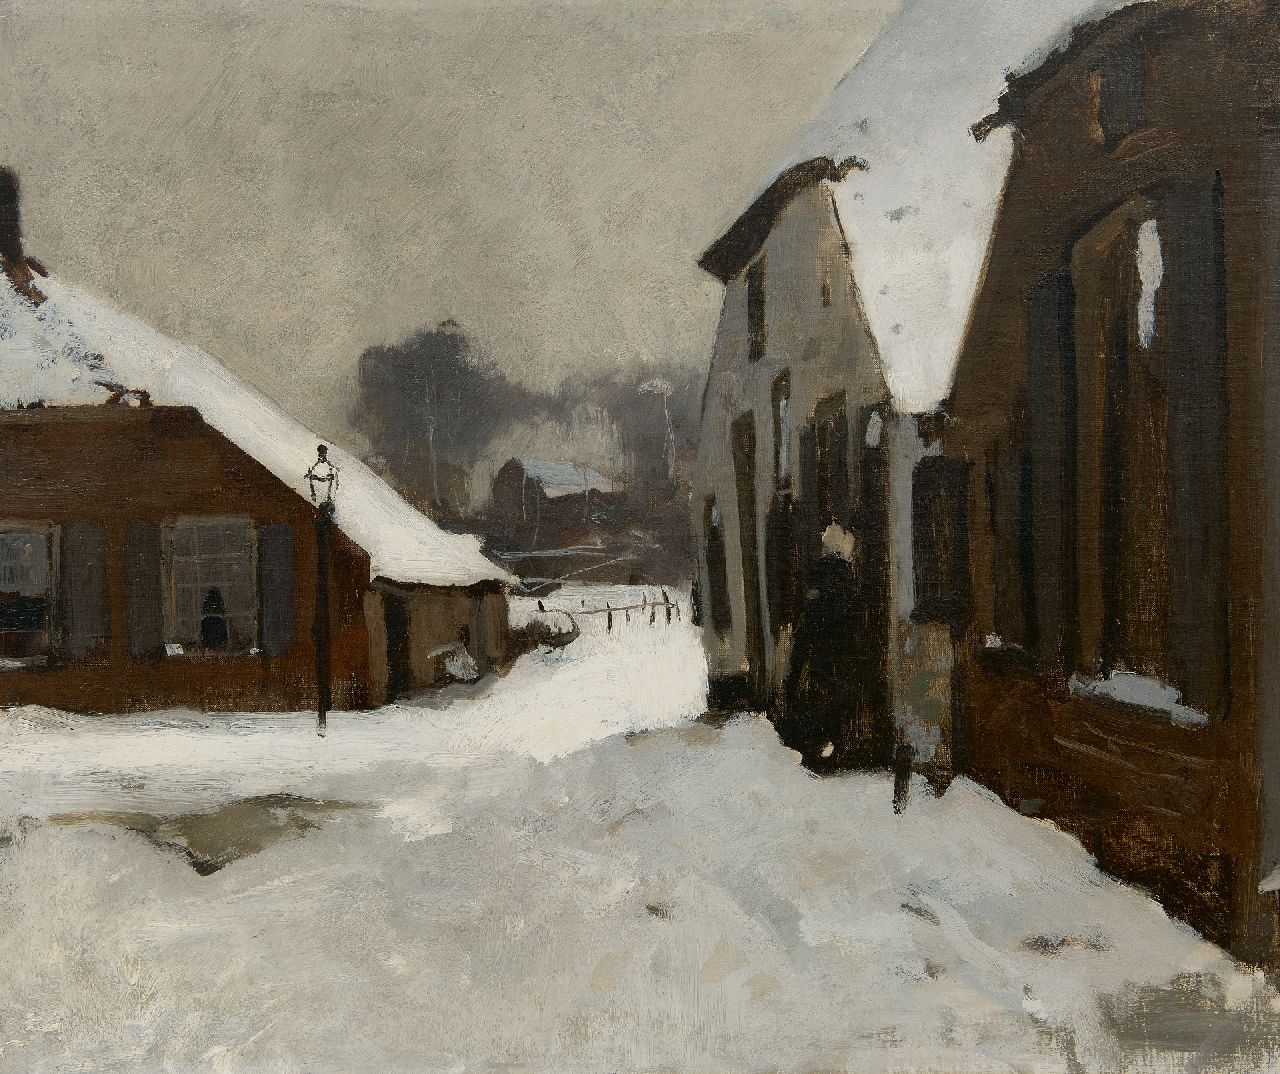 Witsen W.A.  | 'Willem' Arnold Witsen | Schilderijen te koop aangeboden | Winter in Ede, de Driehoek, olieverf op doek 55,2 x 66,5 cm, te dateren ca. 1895-1902